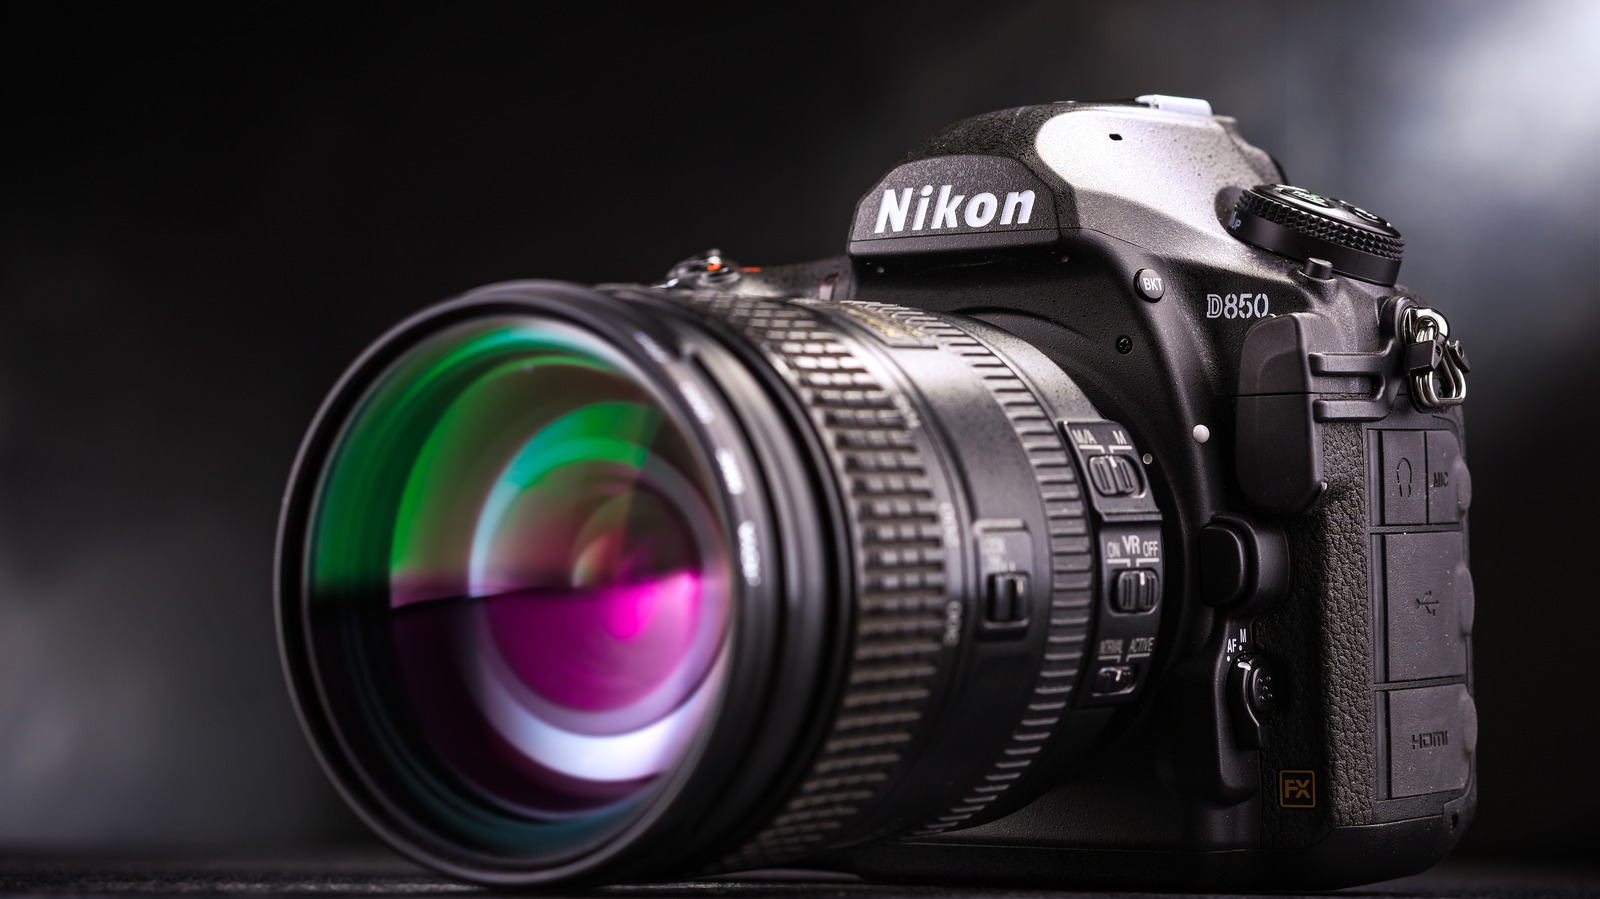 Best Cyber Monday deals on DSLR cameras include Nikon D5600, Canon EOS 4000D